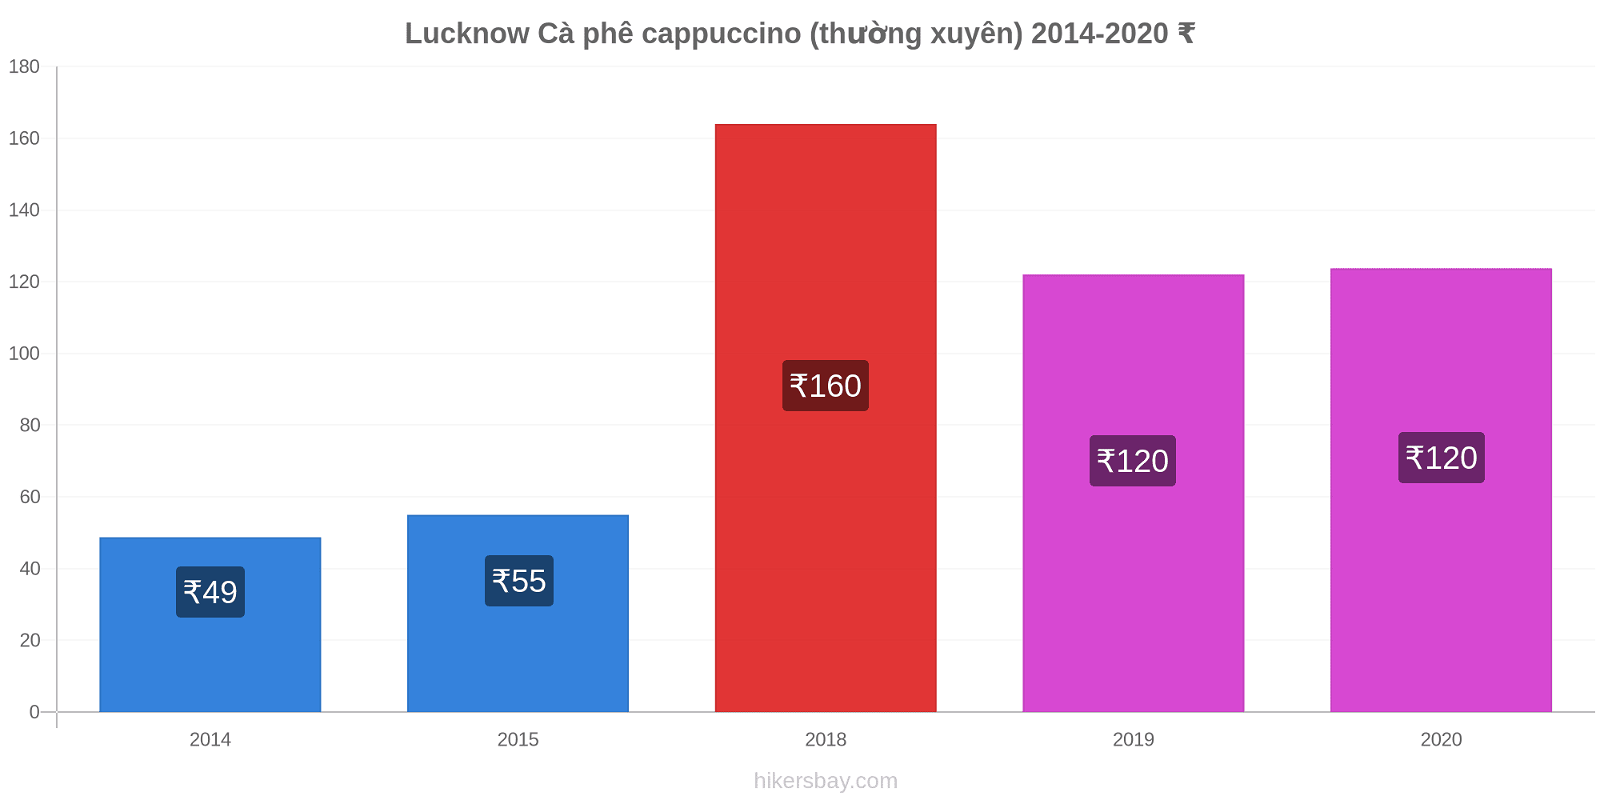 Lucknow thay đổi giá Cà phê cappuccino (thường xuyên) hikersbay.com